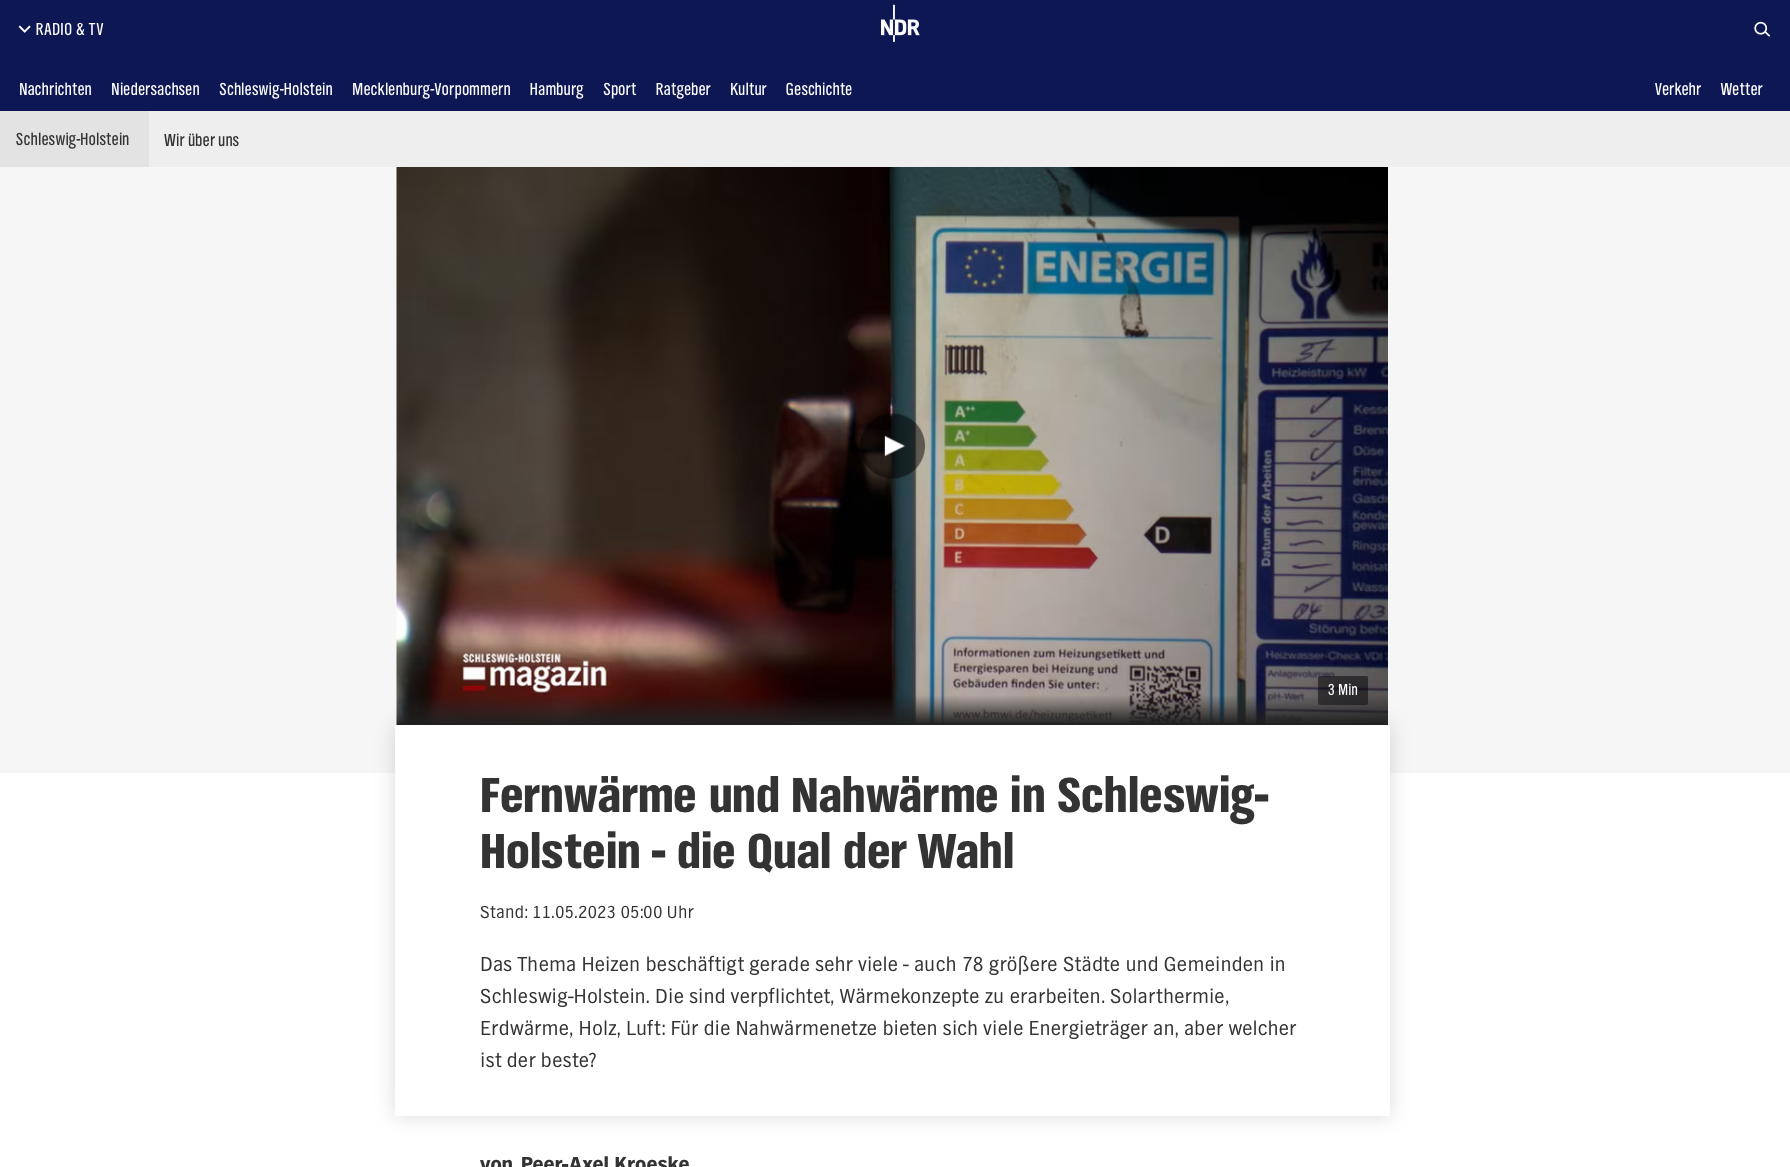 Fernwärme und Nahwärme in Schleswig-Holstein - die Qual der Wahl